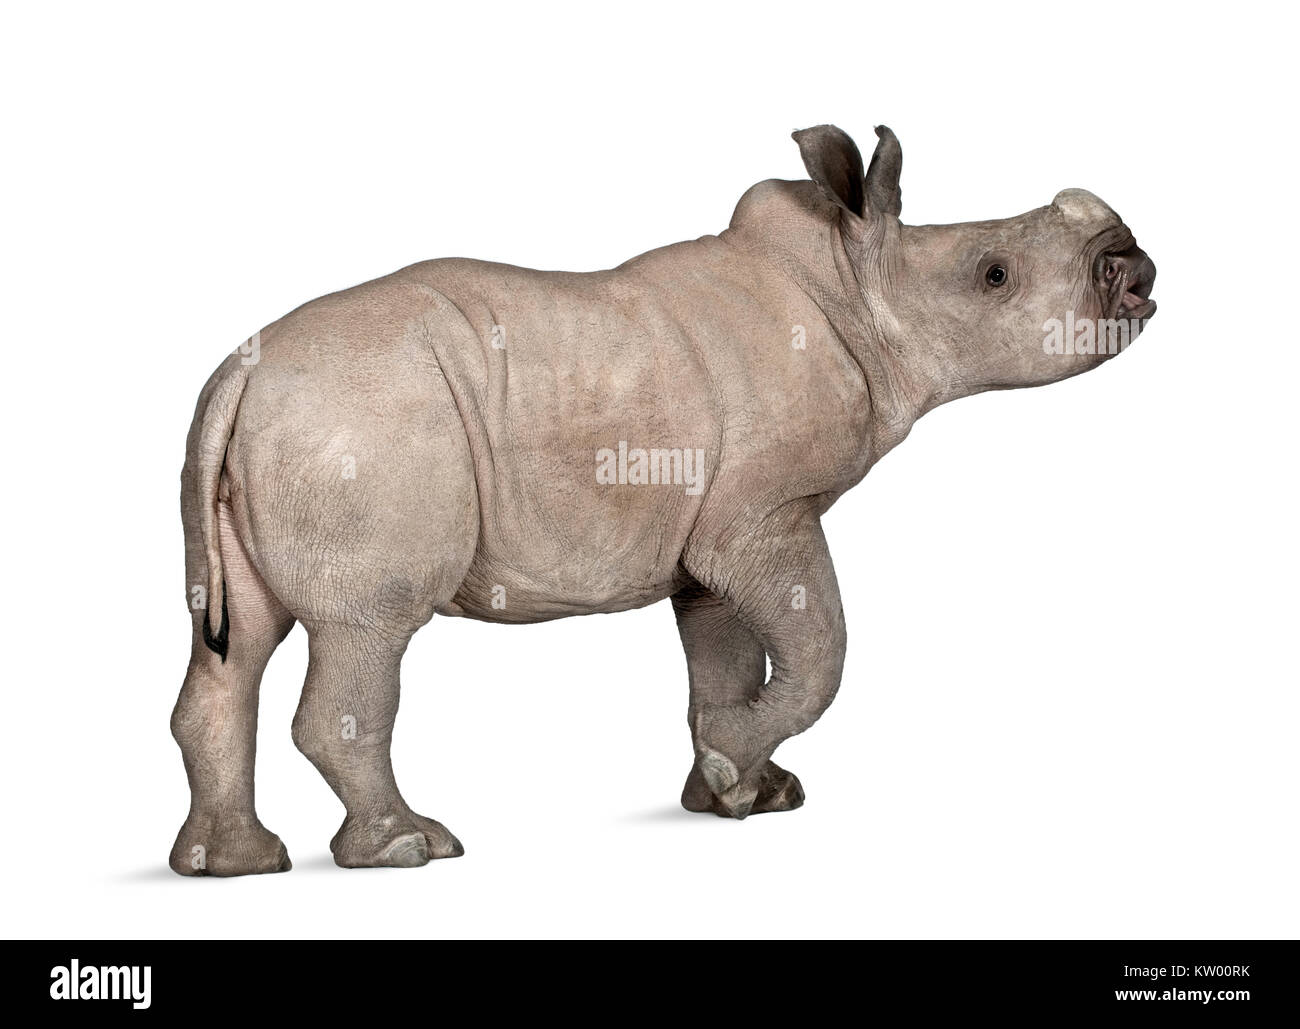 Giovani rinoceronte bianco o piazza a labbro - rinoceronte Ceratotherium simum (2 mesi) davanti a uno sfondo bianco Foto Stock